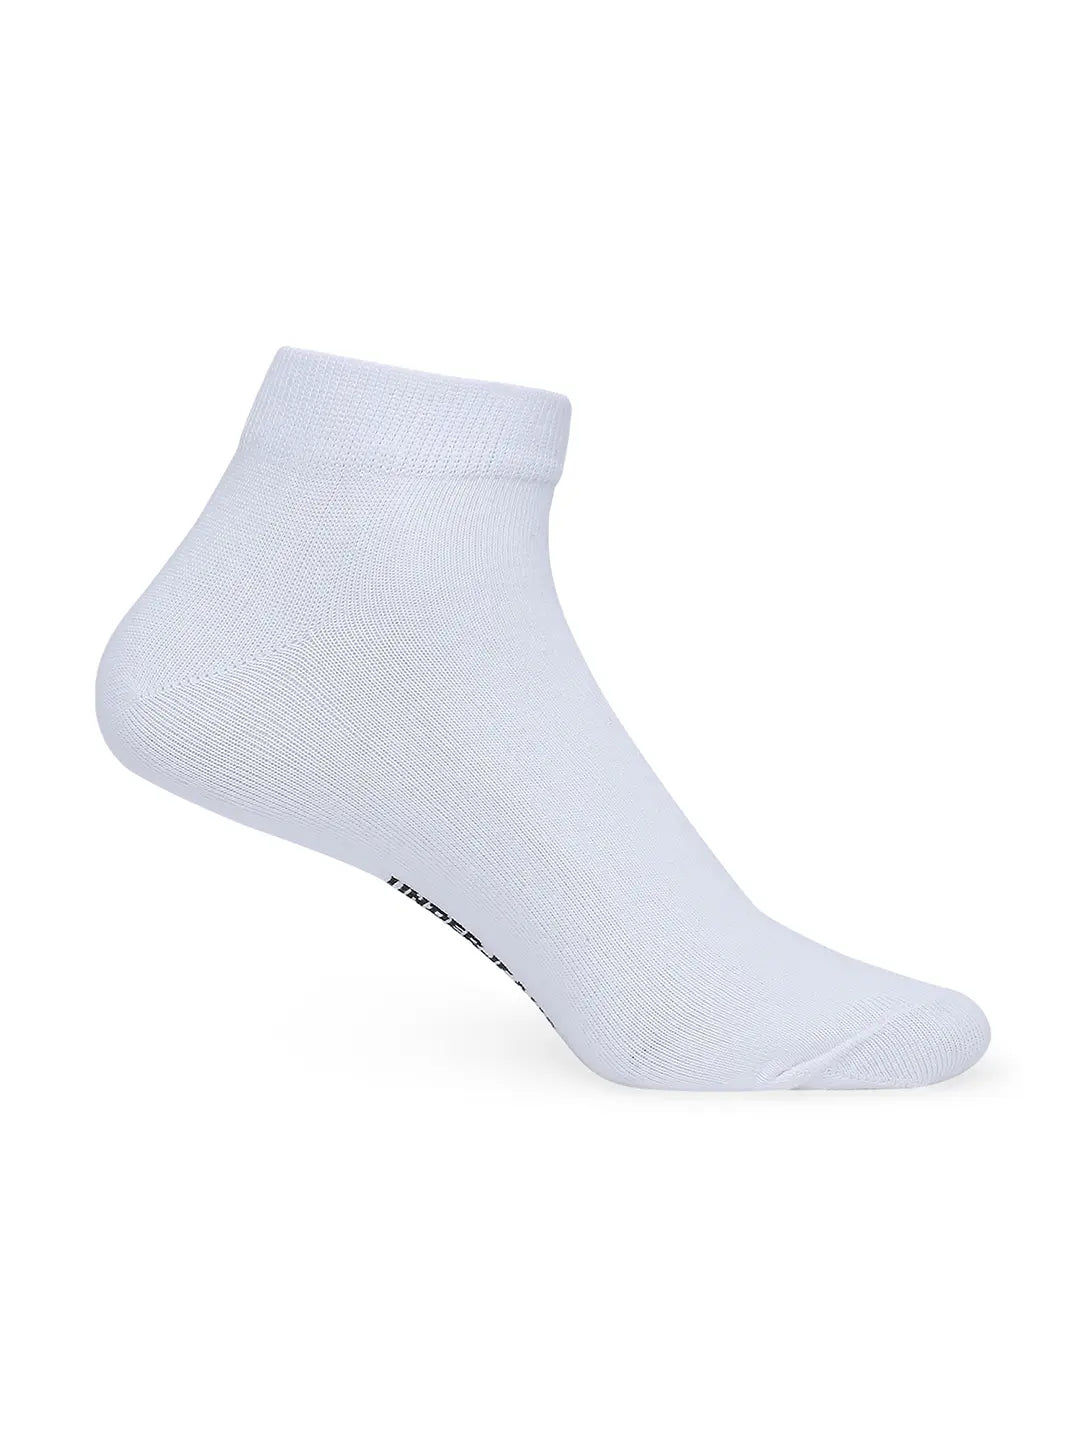 Men White & Navy Cotton Blend Sneaker Socks - Pack Of 2 - Underjeans by Spykar